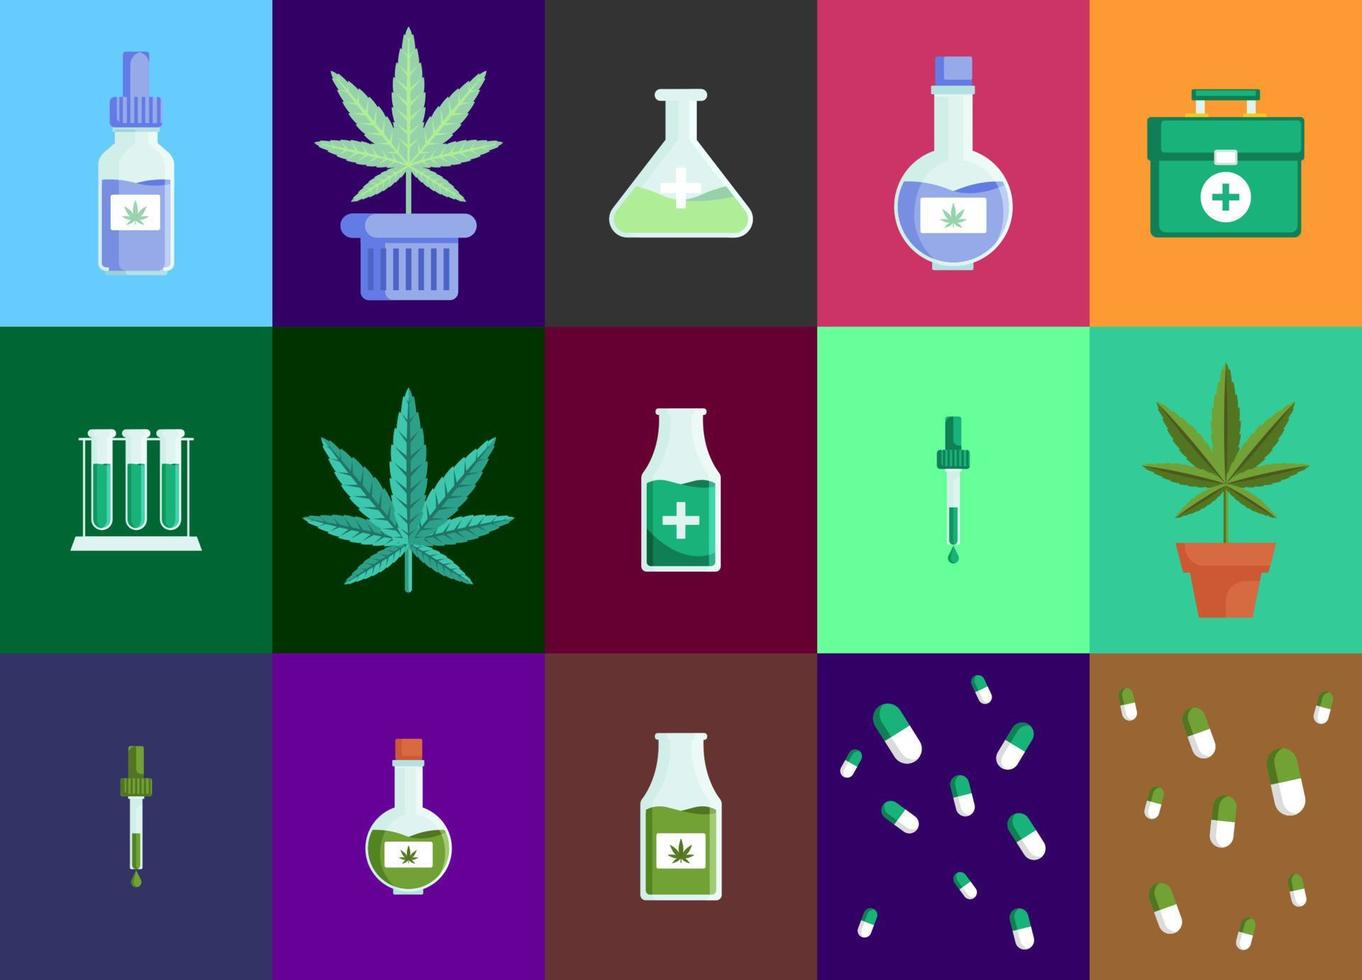 illustration des cannabinoïdes. médical de l'illustration plate du cannabis. style design plat. couleur moderne des soins de santé. vecteur eps 10